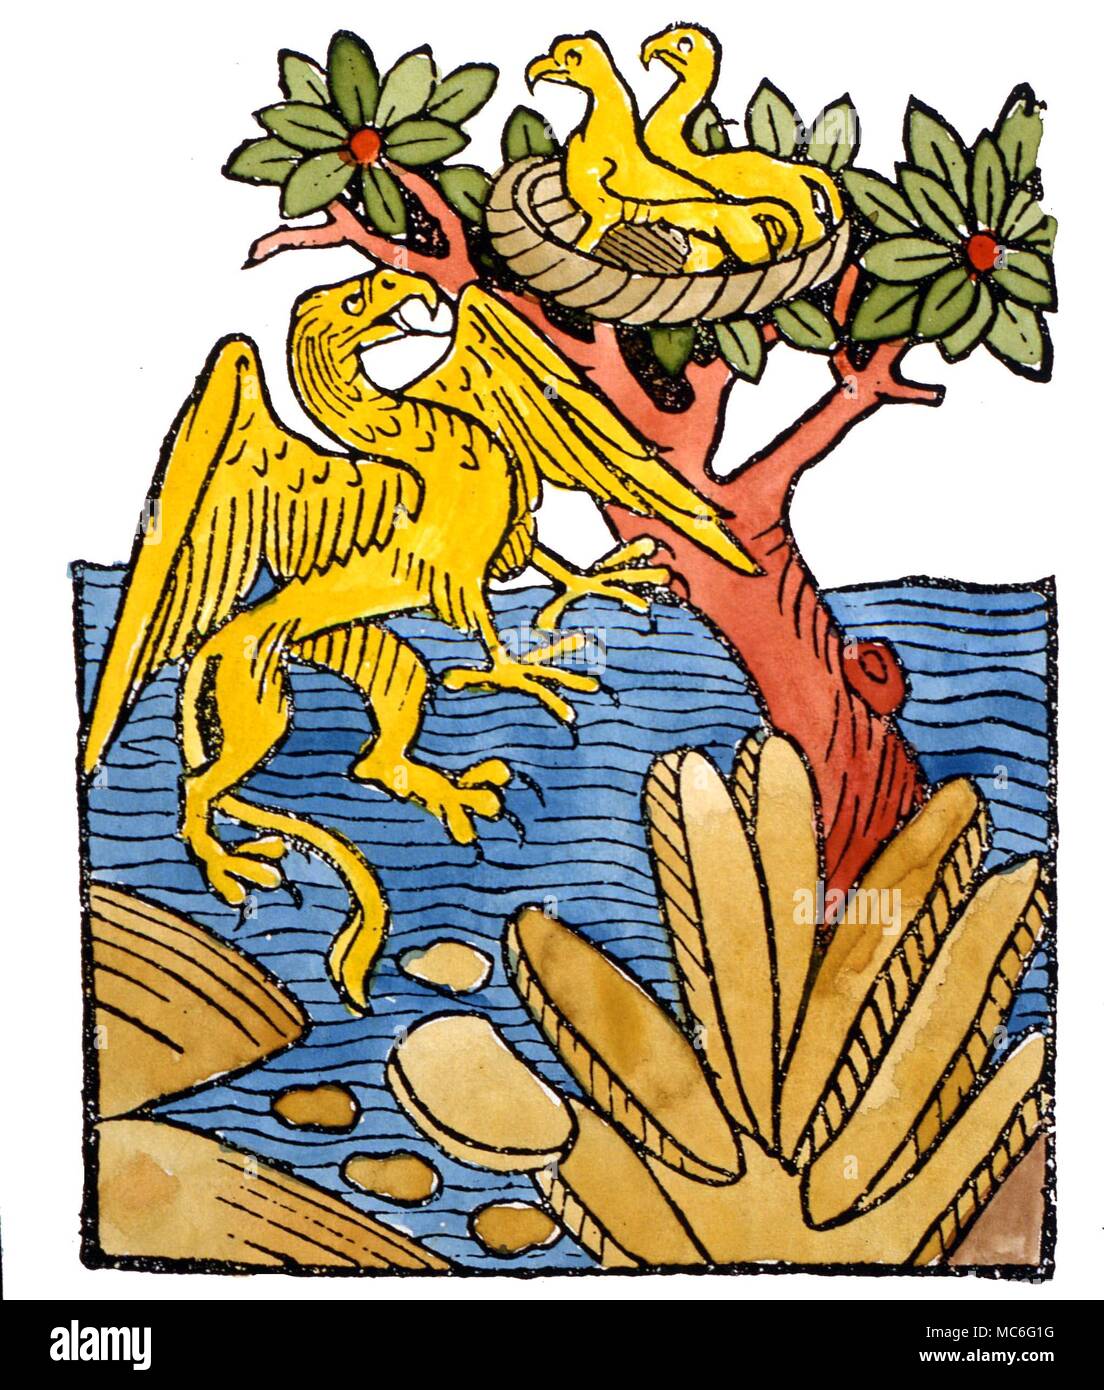 Die fabelhafte Griffin, mit Flügel und Kopf eines Adlers und den Körper eines Löwen, fliegen in Richtung zu seinem Nest. Aus dem sechzehnten Jahrhundert Holzschnitt Bestiarium. Stockfoto